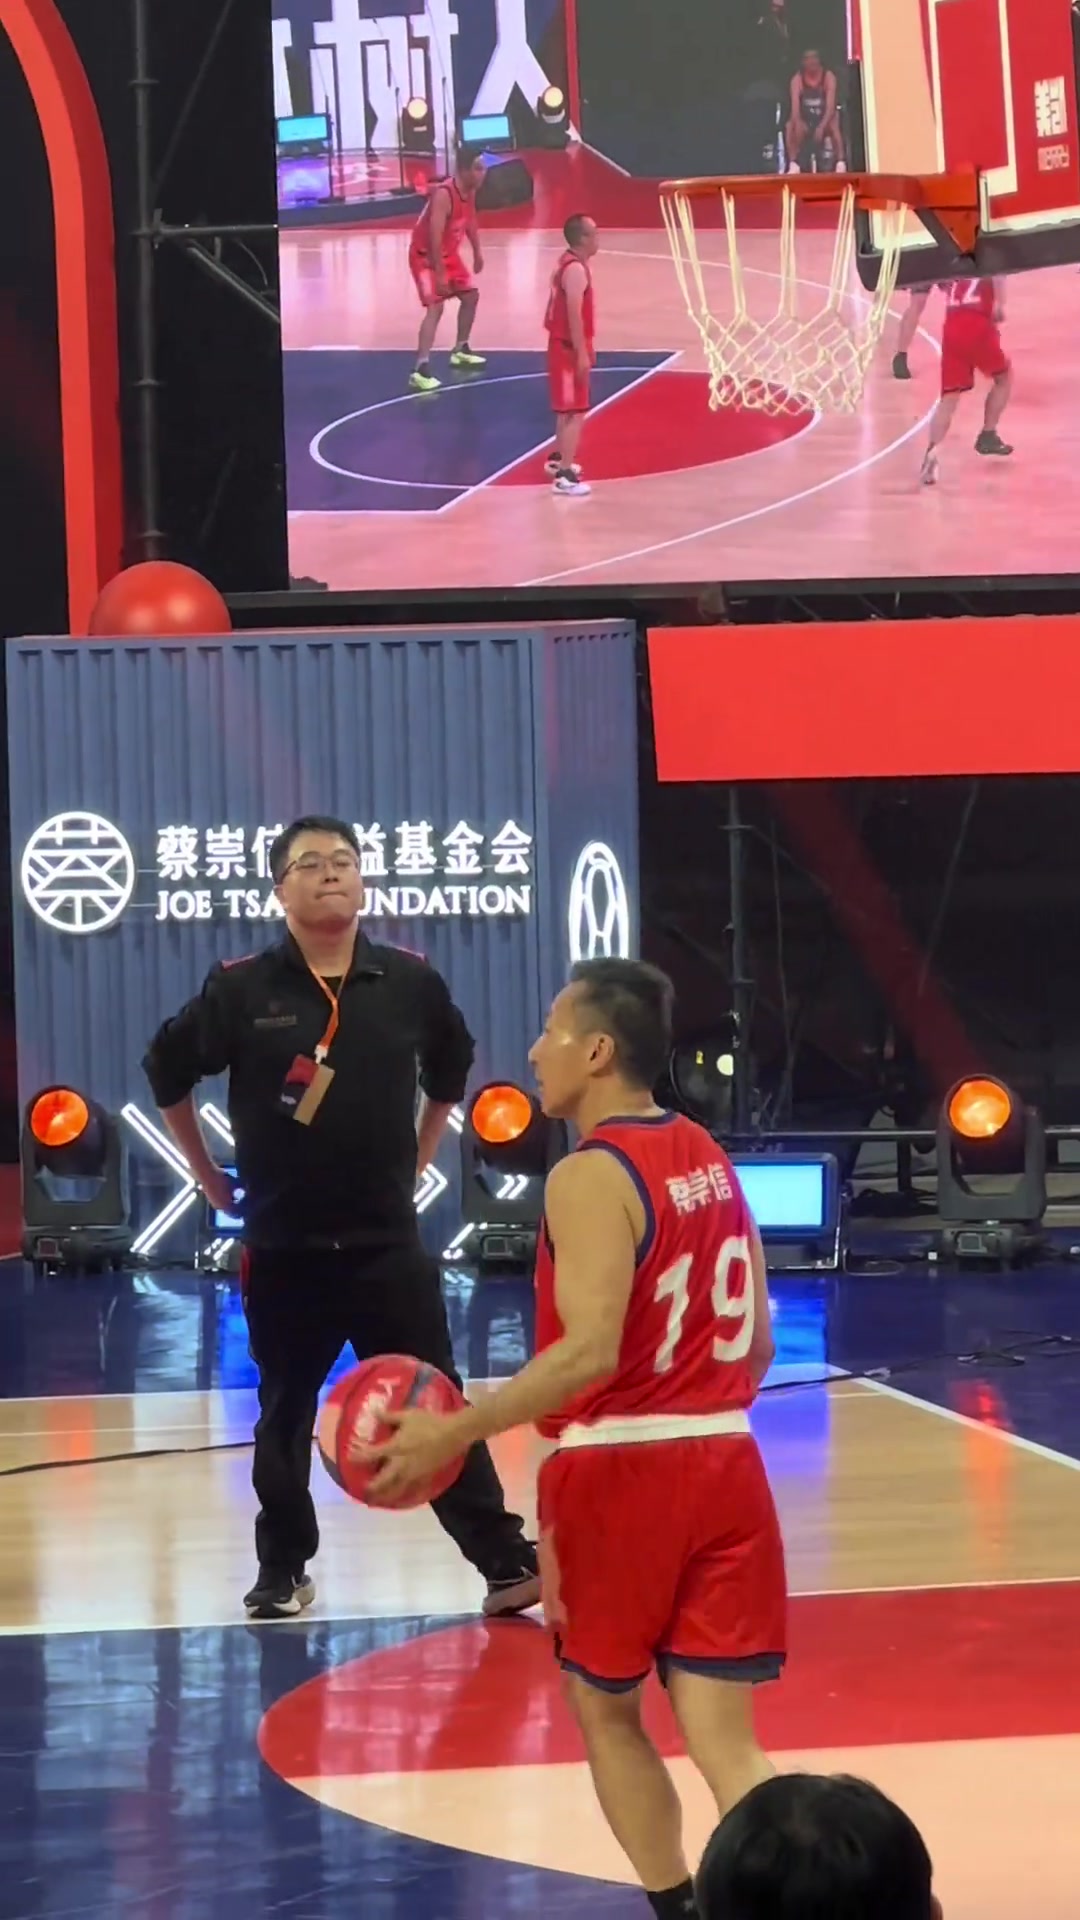 中国男篮的球员向来是不惹事也不怕事，面对挑衅从来没怂过